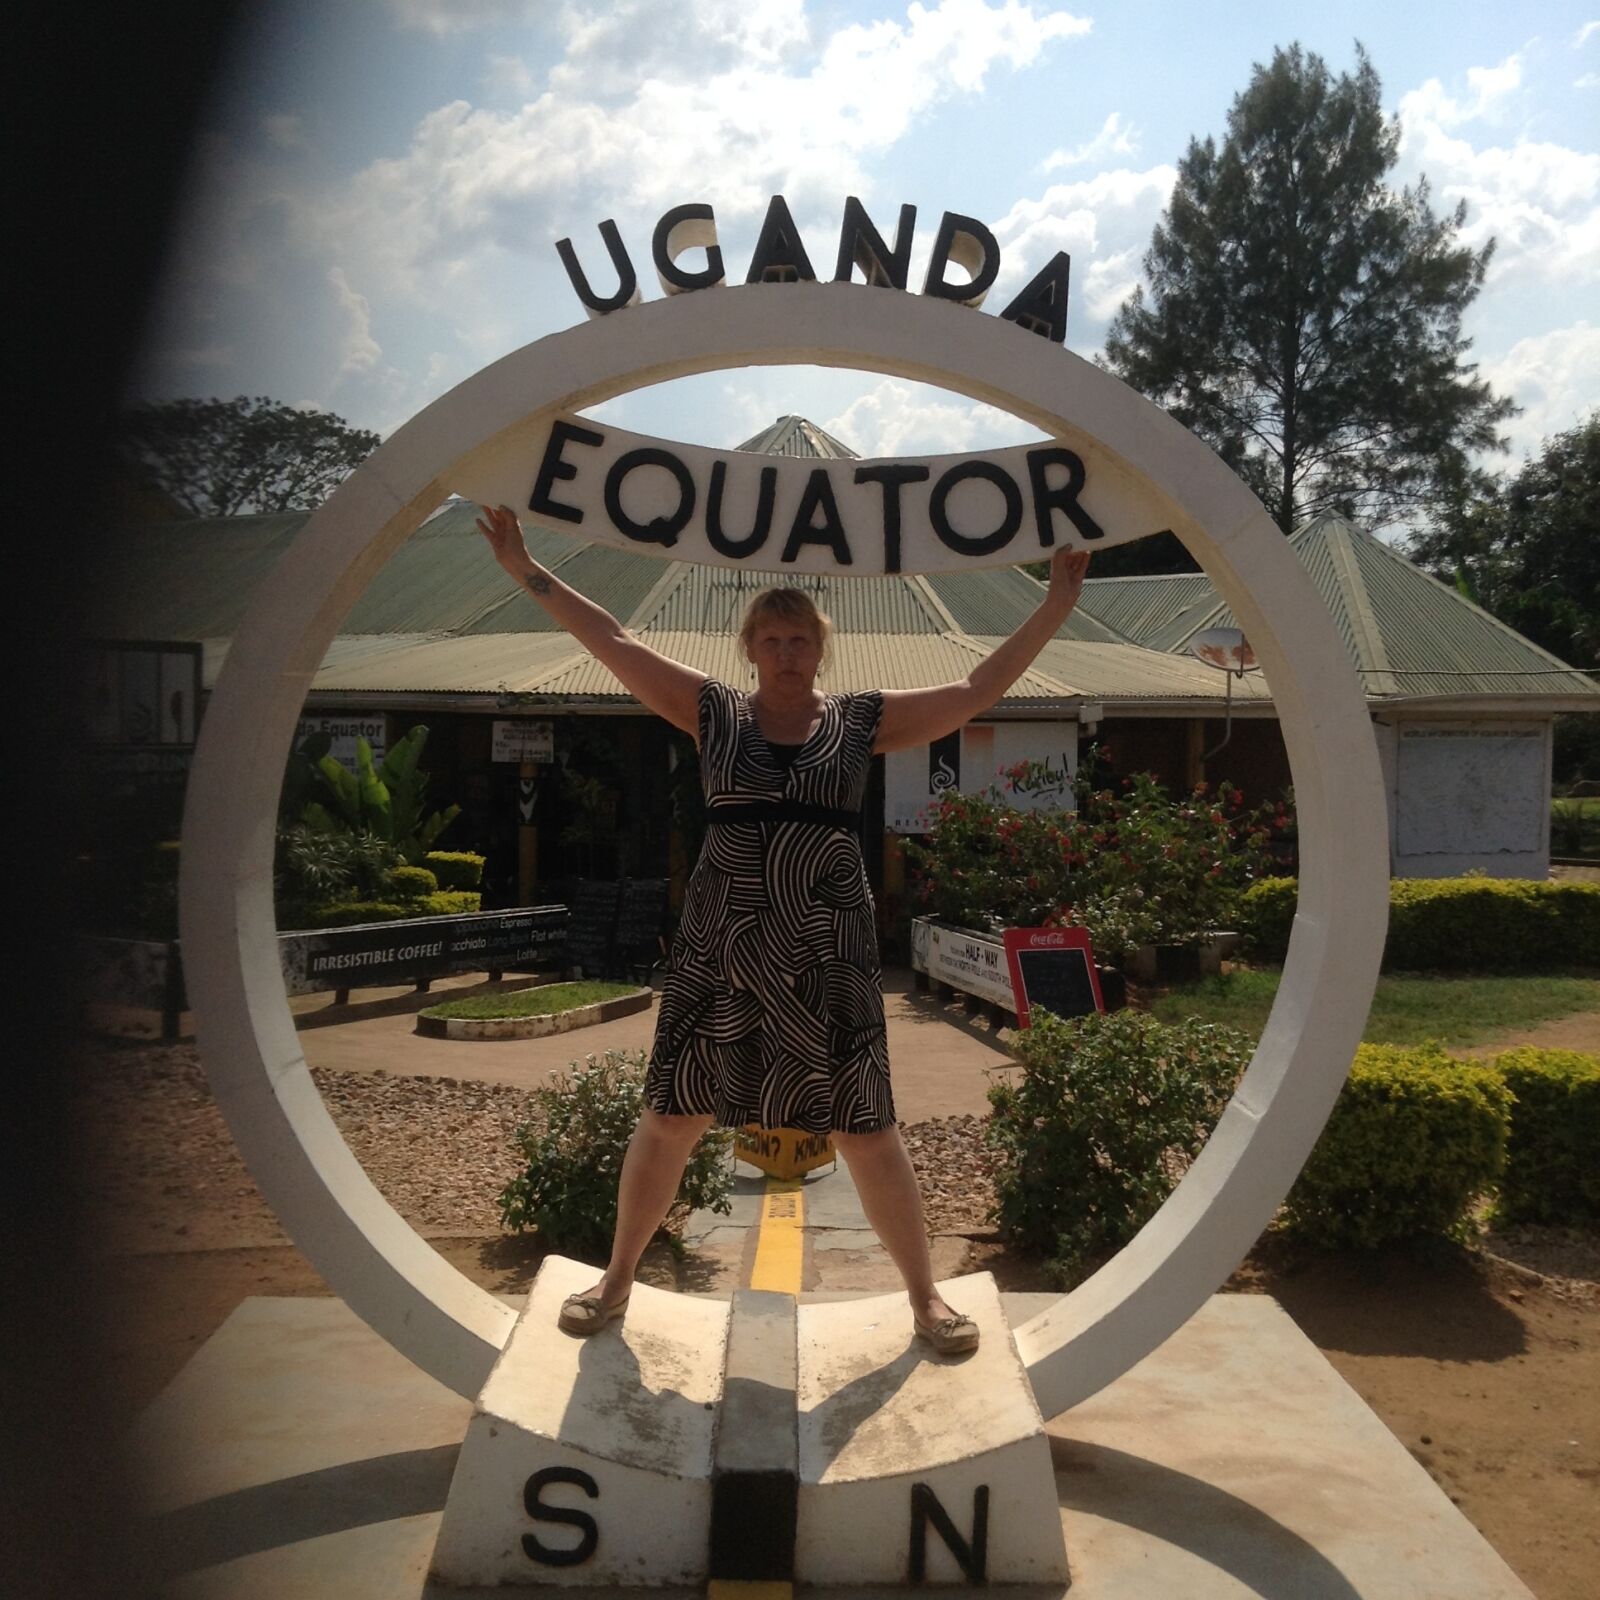 Apple iPad mini sample photo. The, equator, uganda photography